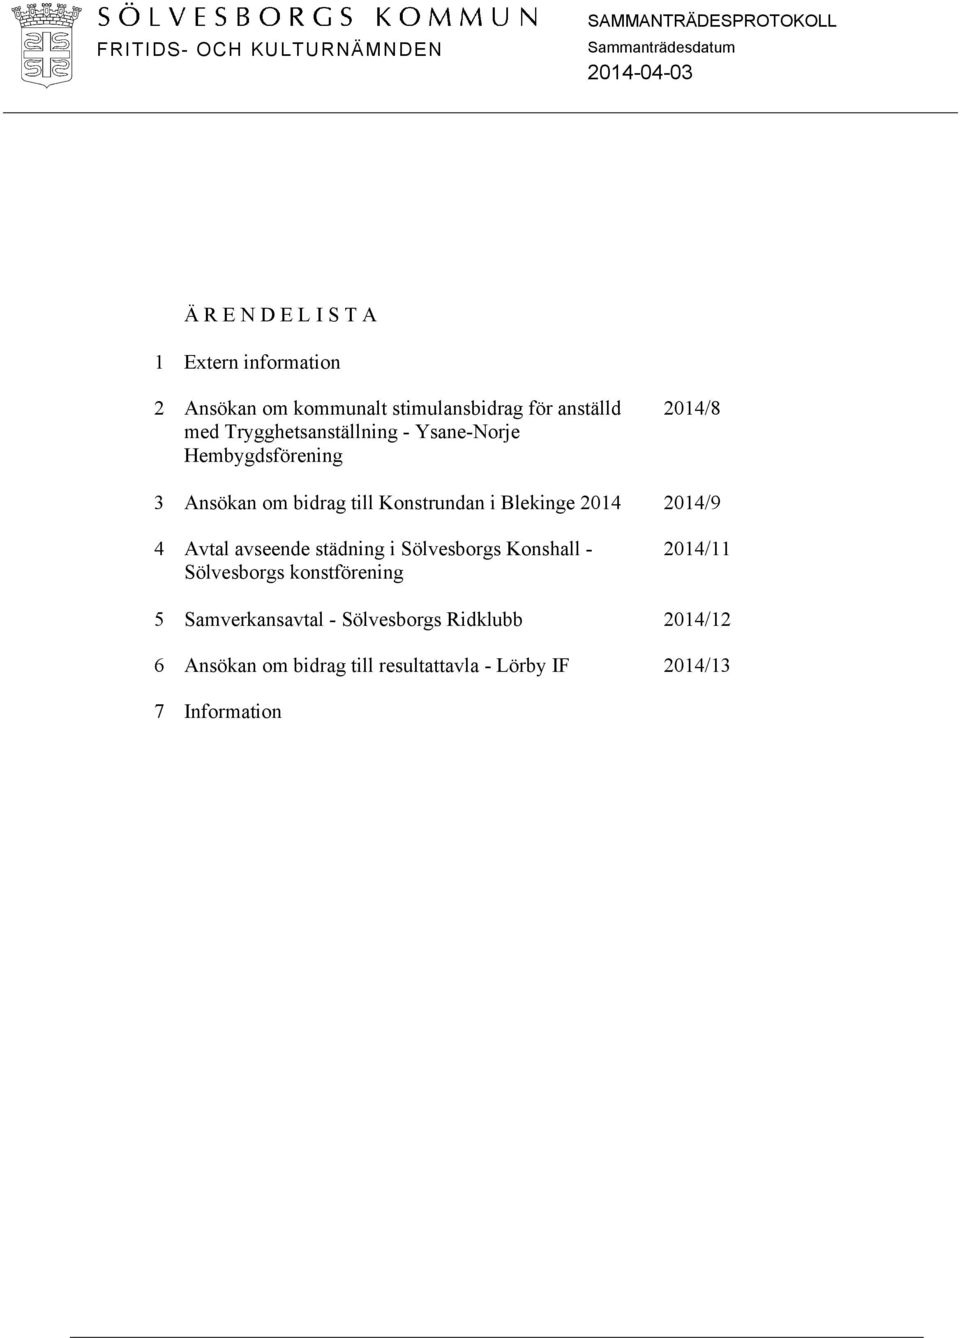 Blekinge 2014 2014/9 4 Avtal avseende städning i Sölvesborgs Konshall - Sölvesborgs konstförening 2014/11